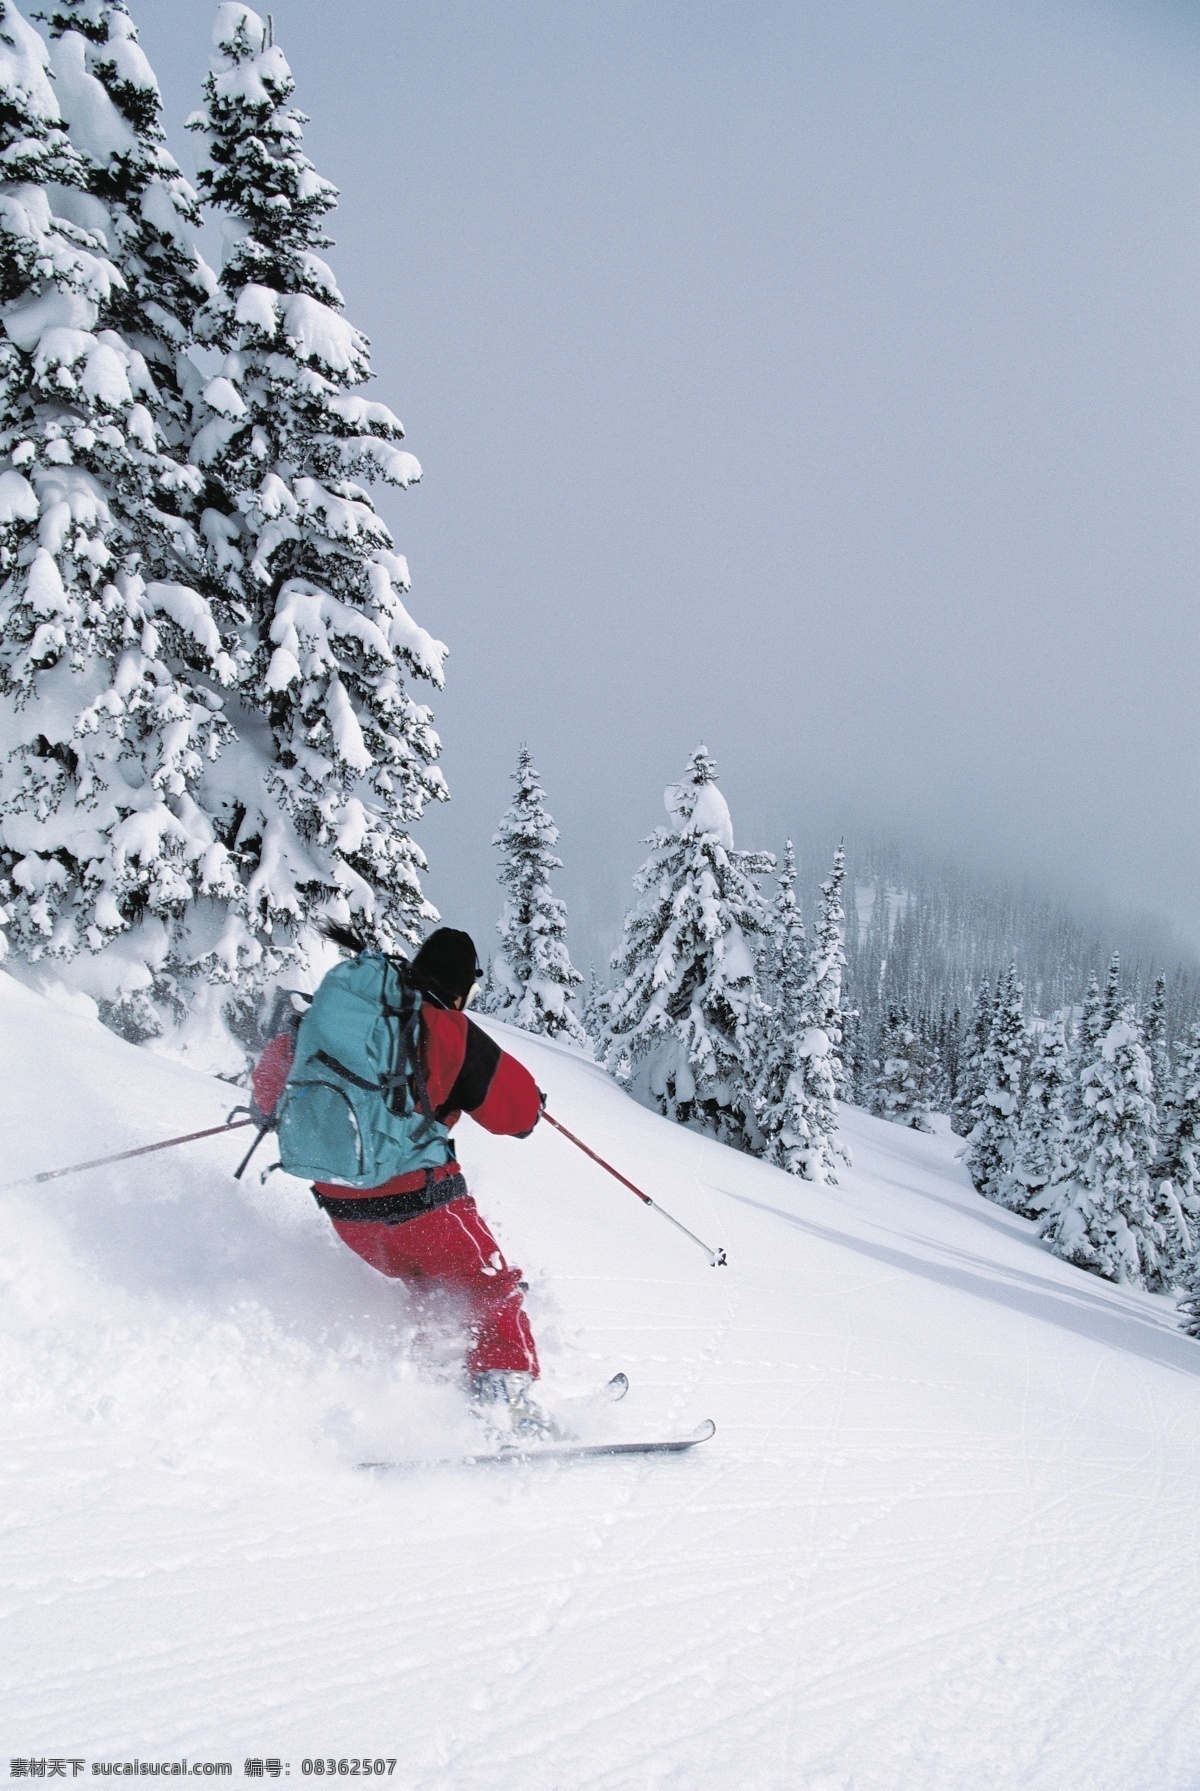 冬天 高山 划 雪 雪地运动 雪地 运动 划雪 精彩 高山划雪 高山划雪运动 极限运动 运动图片 生活百科 摄影图片 体育运动